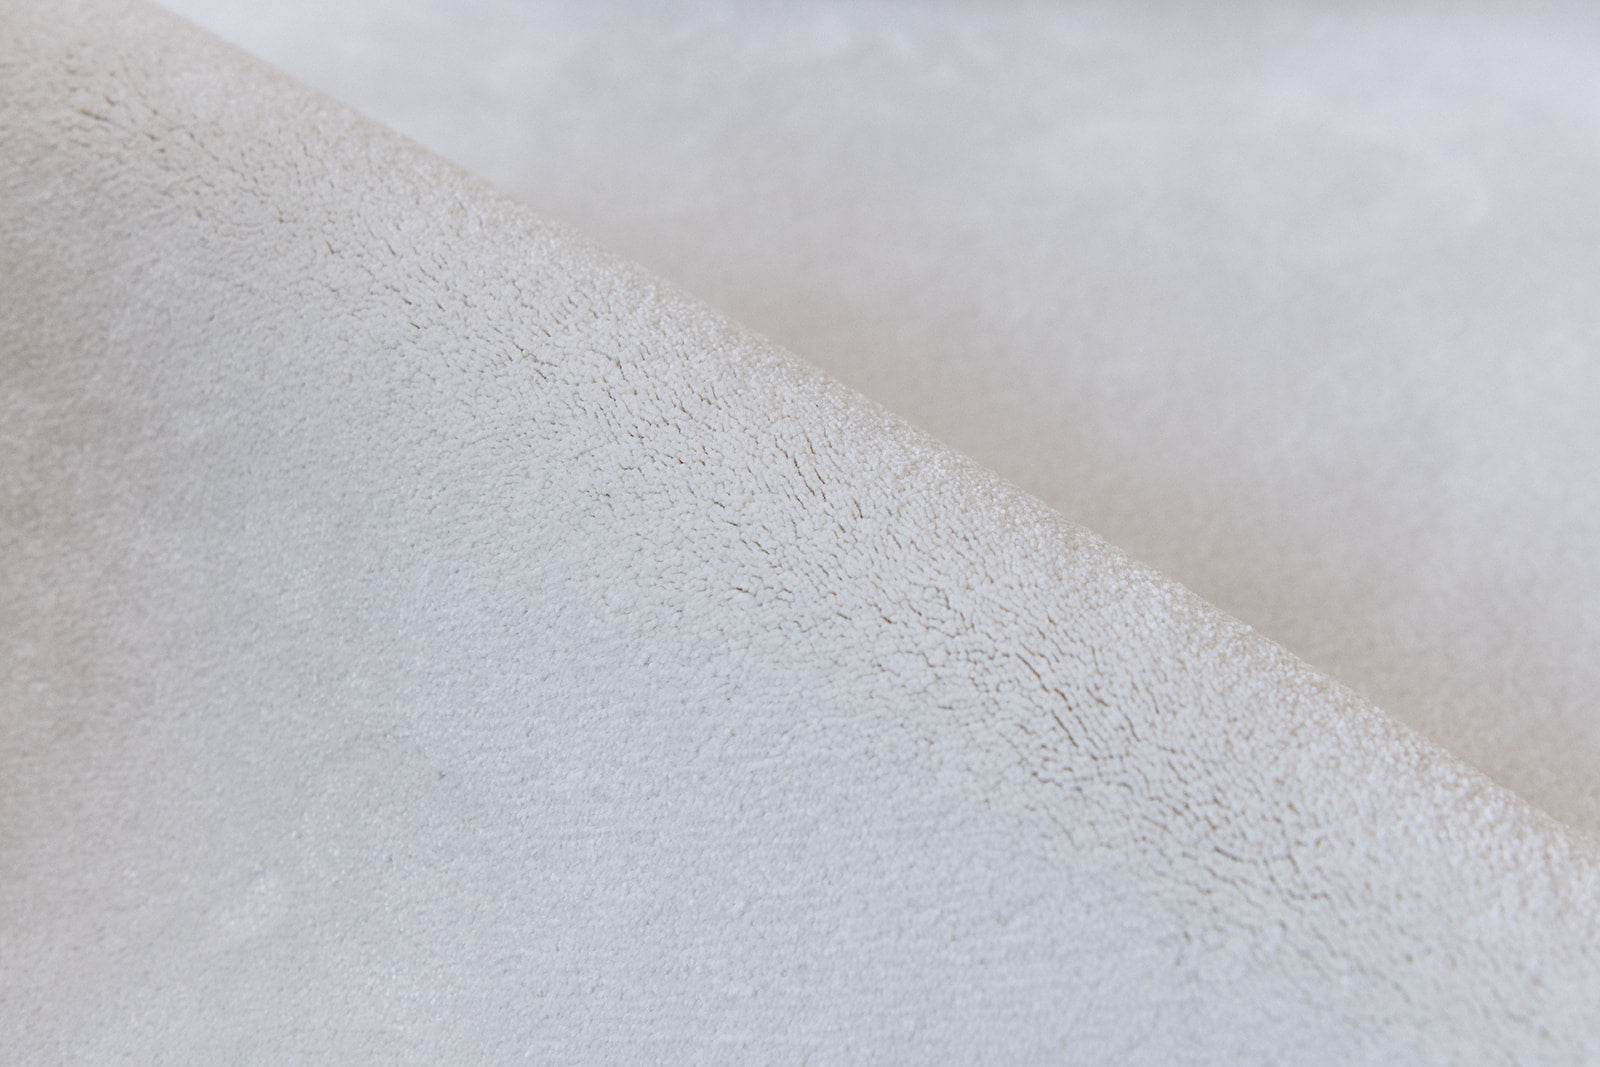 Detail zacht materiaal duurzaam tapijt in een witte tint, tender kleur.